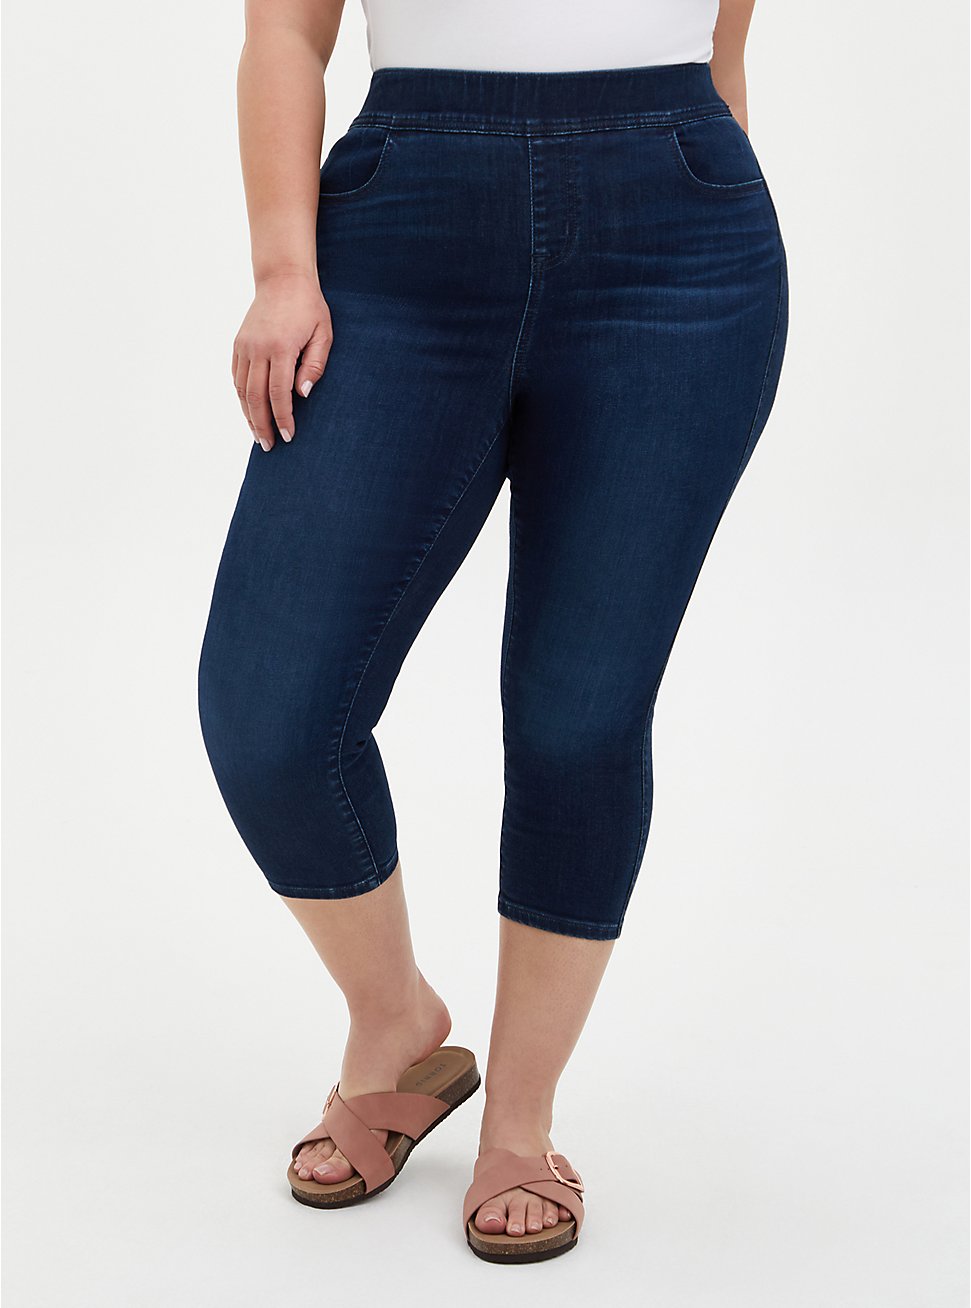 Plus Size - Crop Lean Jean - Super Soft Dark Wash - Torrid